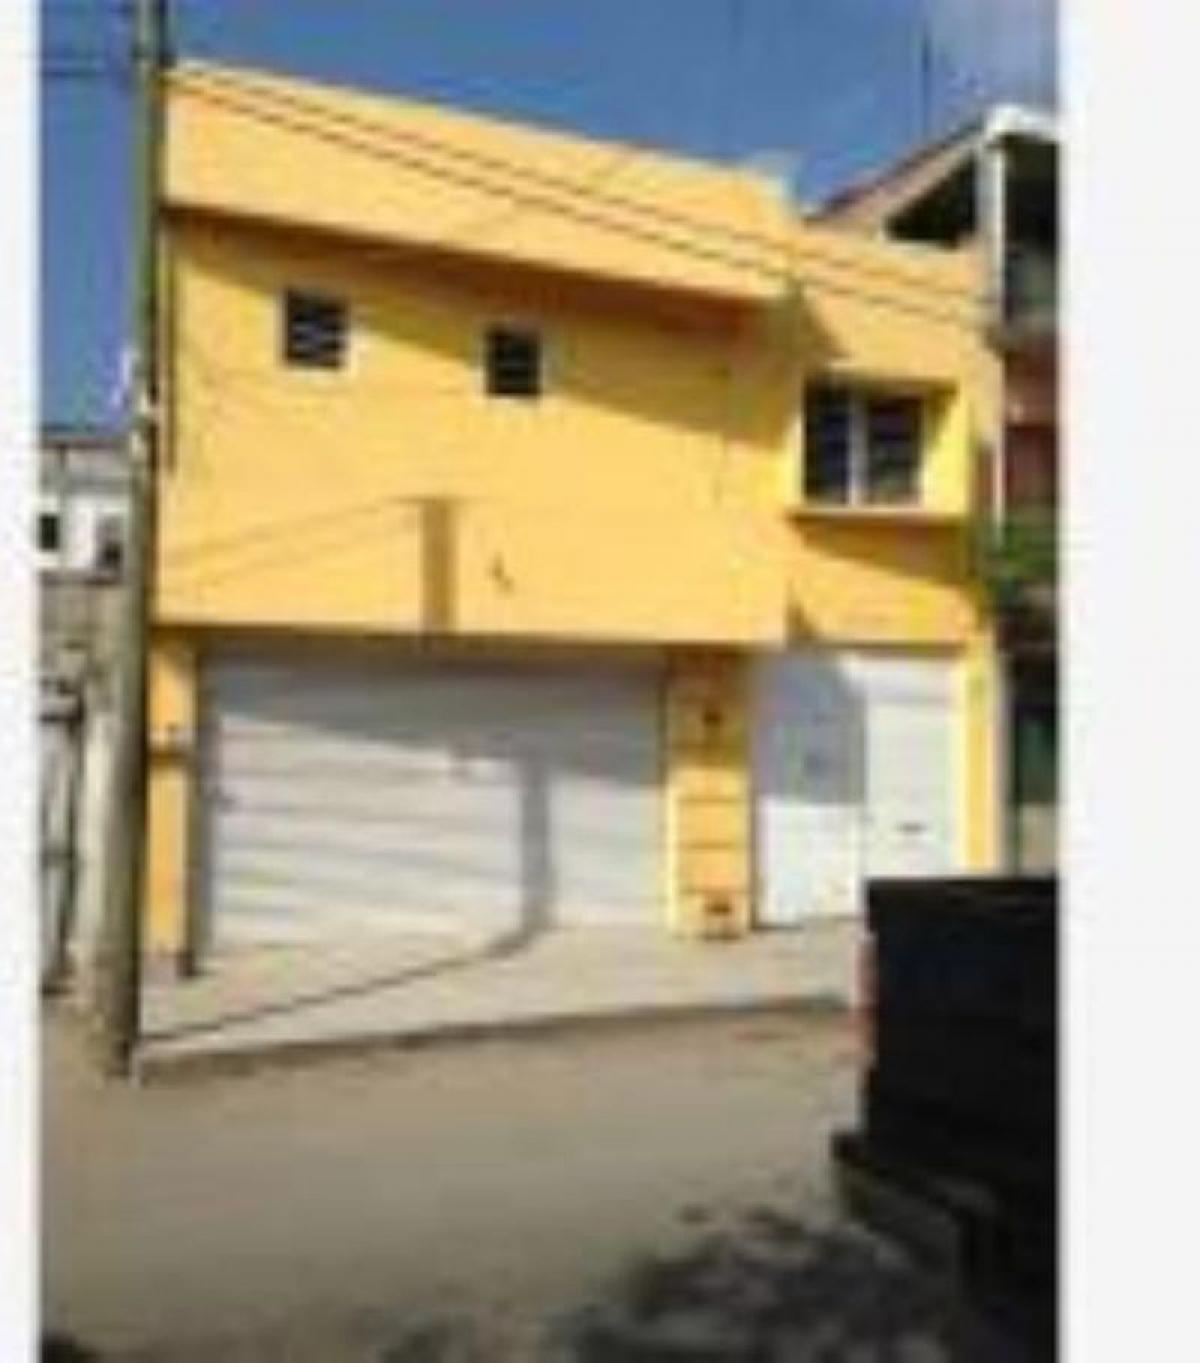 Picture of Apartment For Sale in Tuxtla Gutierrez, Chiapas, Mexico